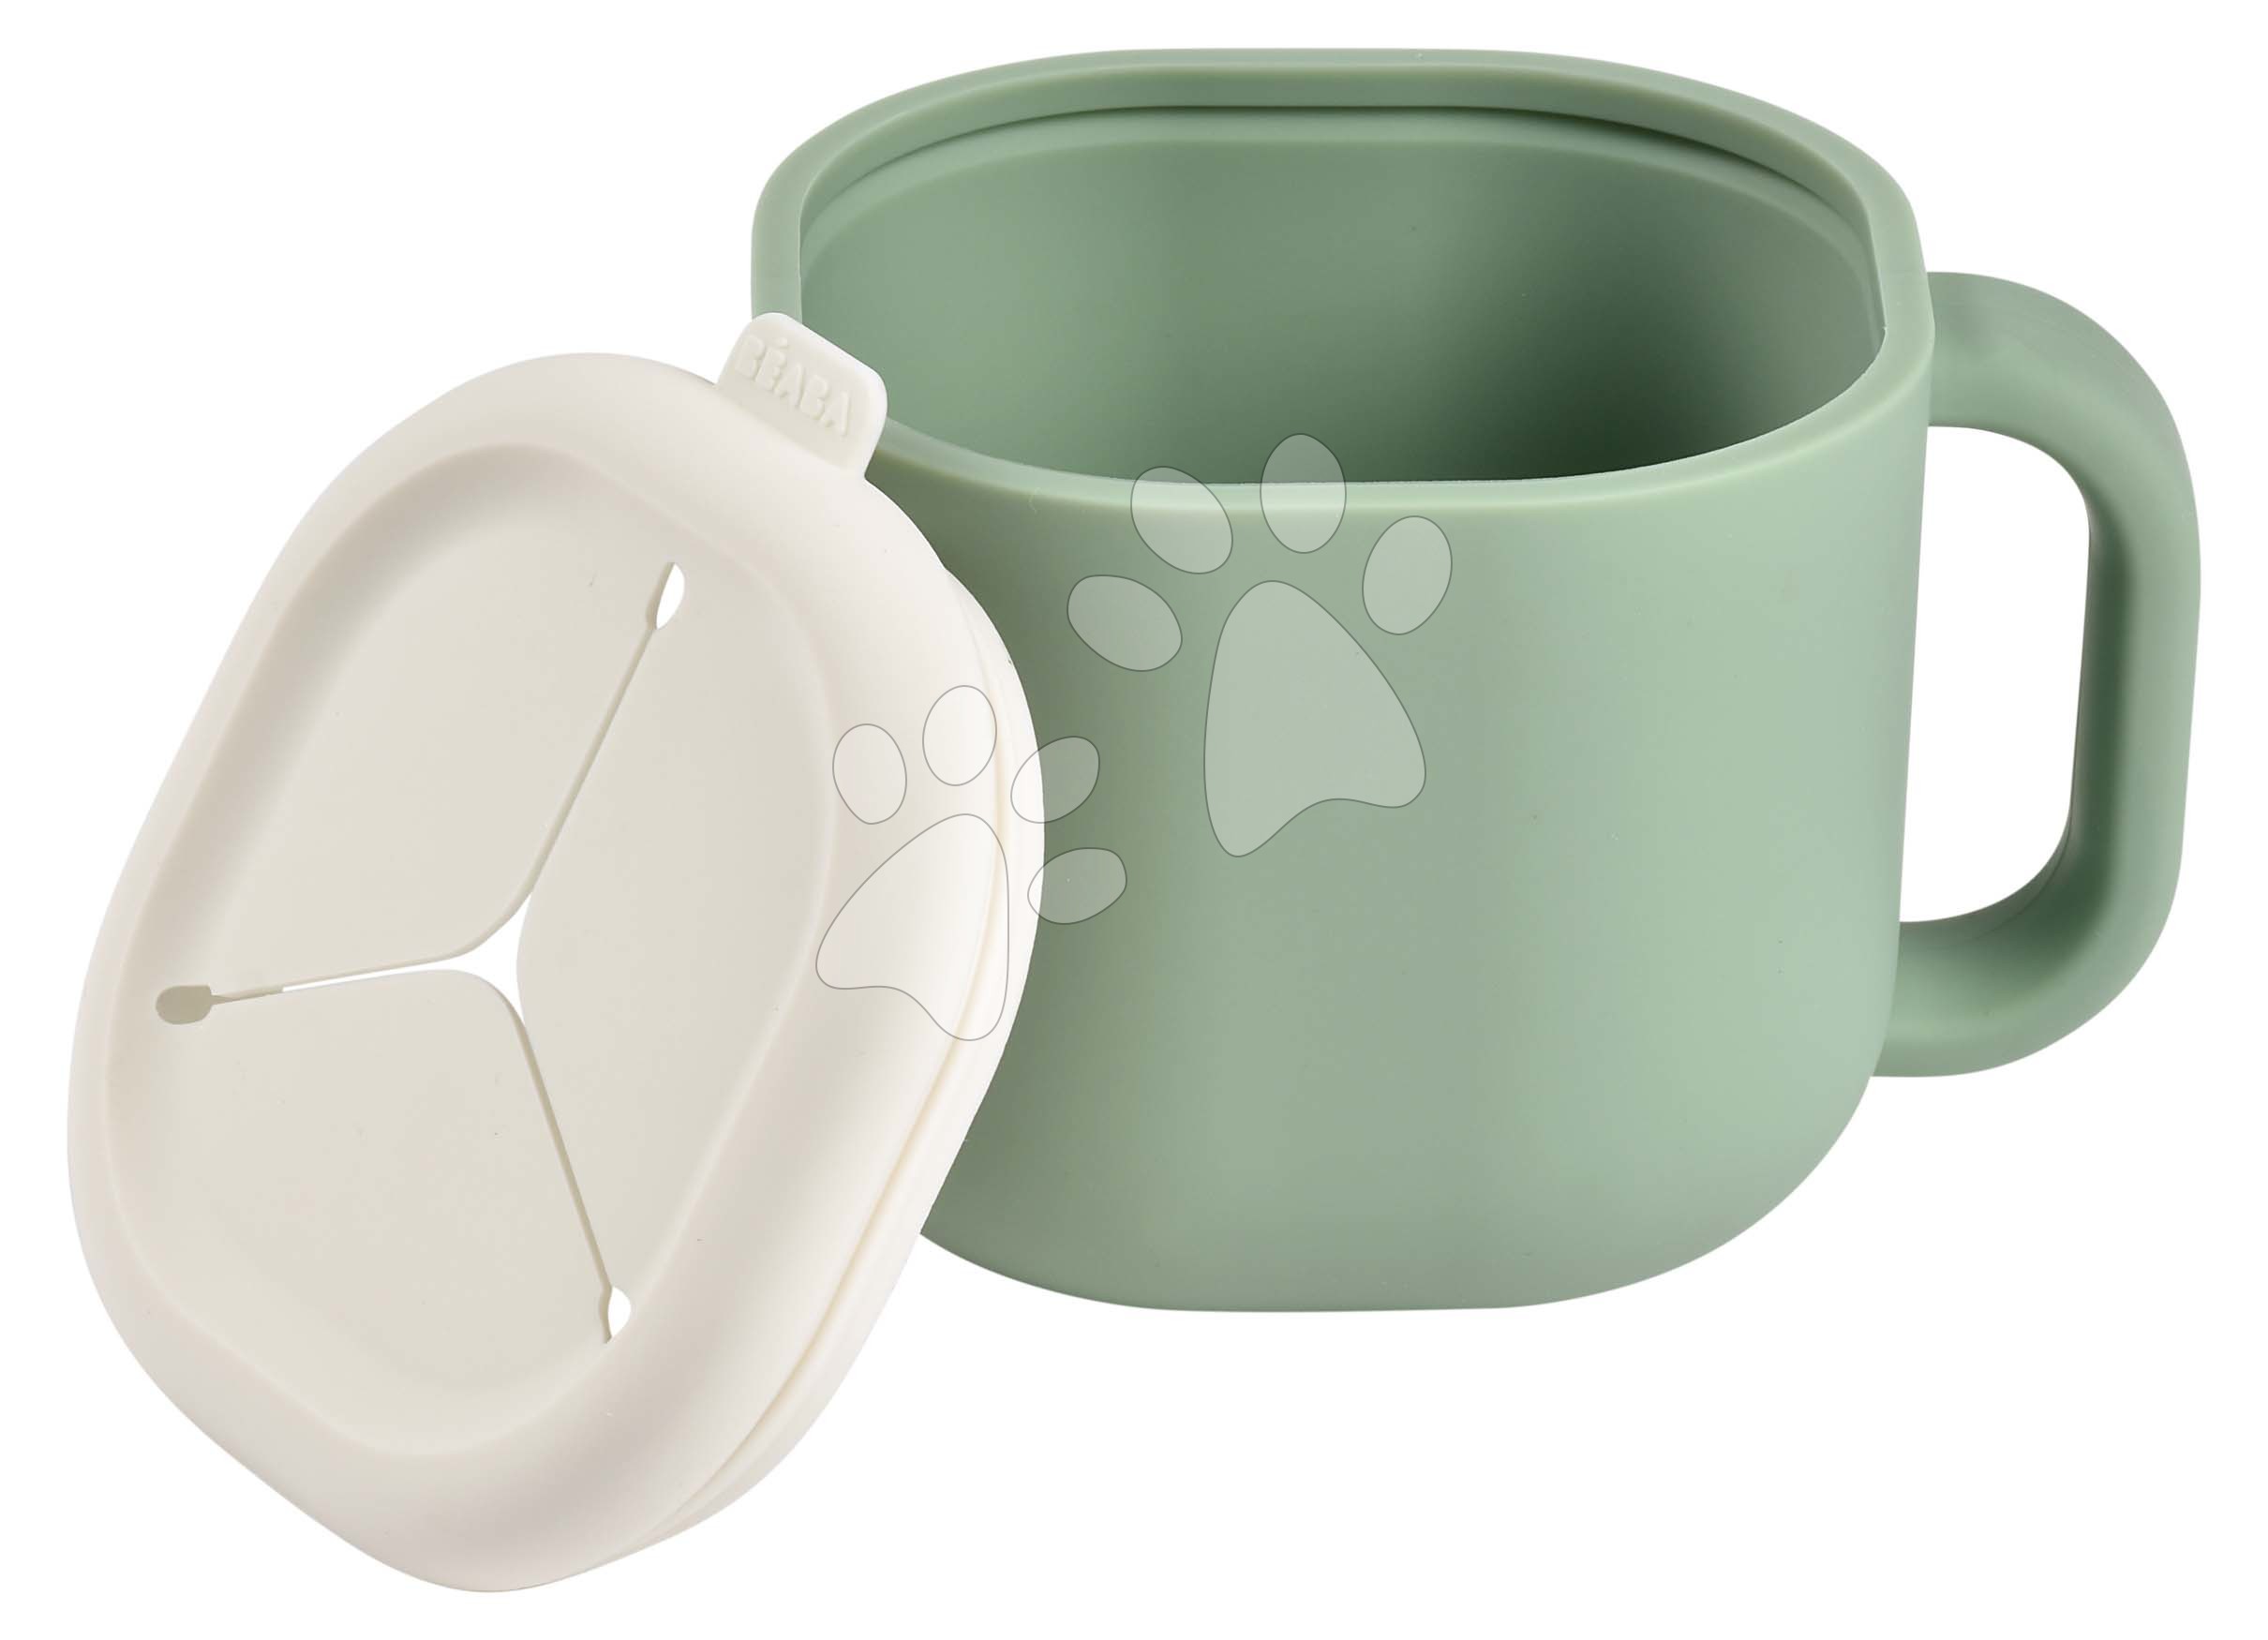 Hrneček pro miminka Pick \'n\' Snack Silicone Snack Cup Beaba Sage Green na učení se jíst zelený od 10 měsíců